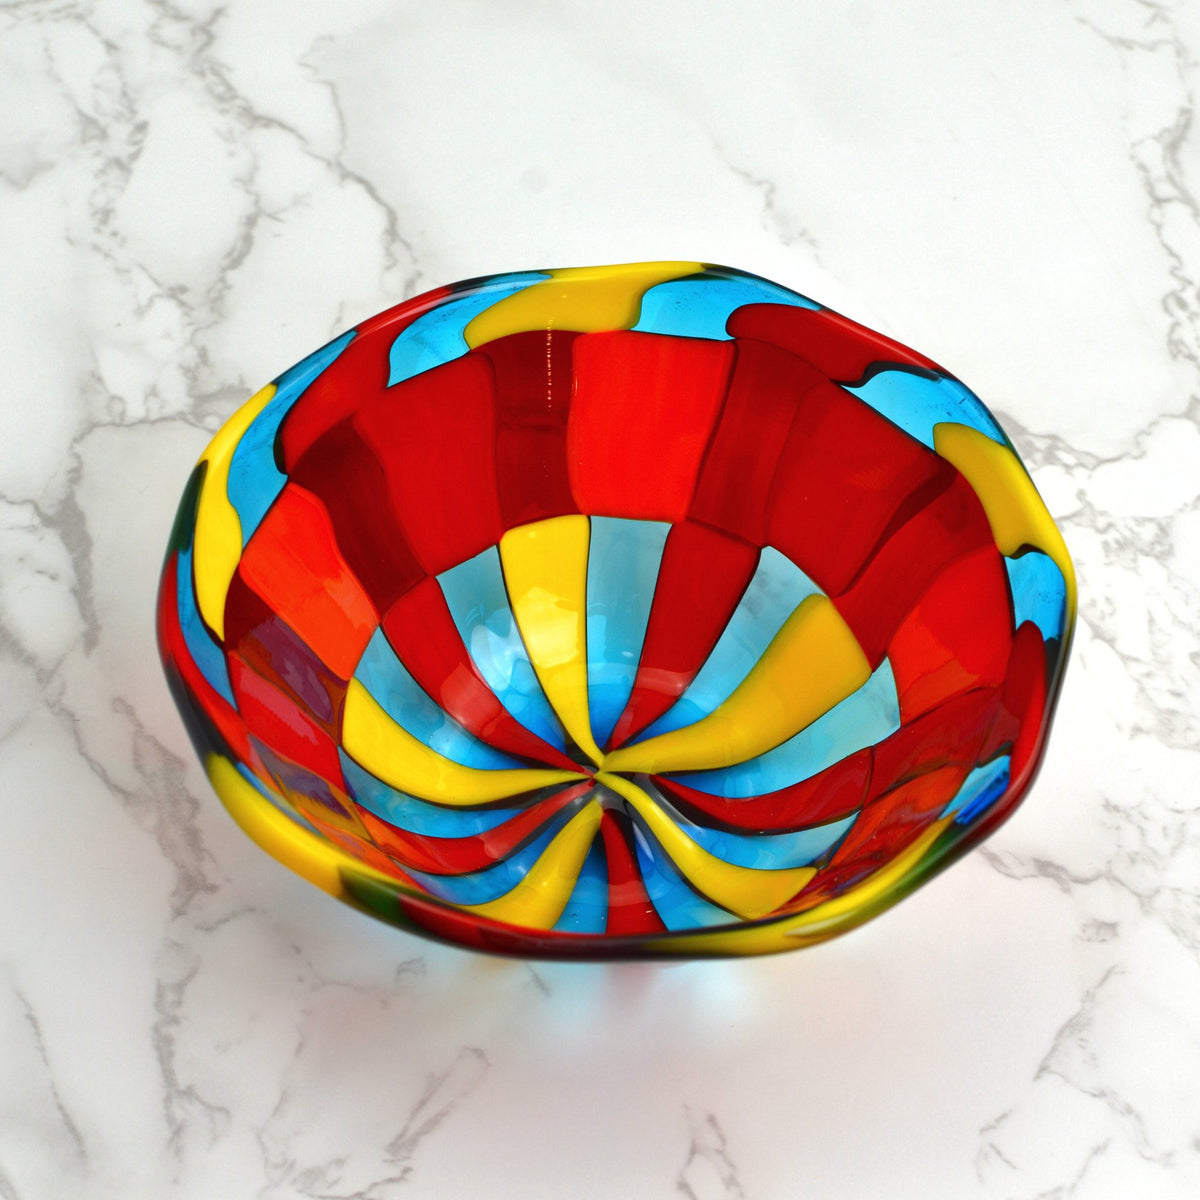 Murano Glass Pazzia Small Bowl, Multi-Colored, Made in Italy